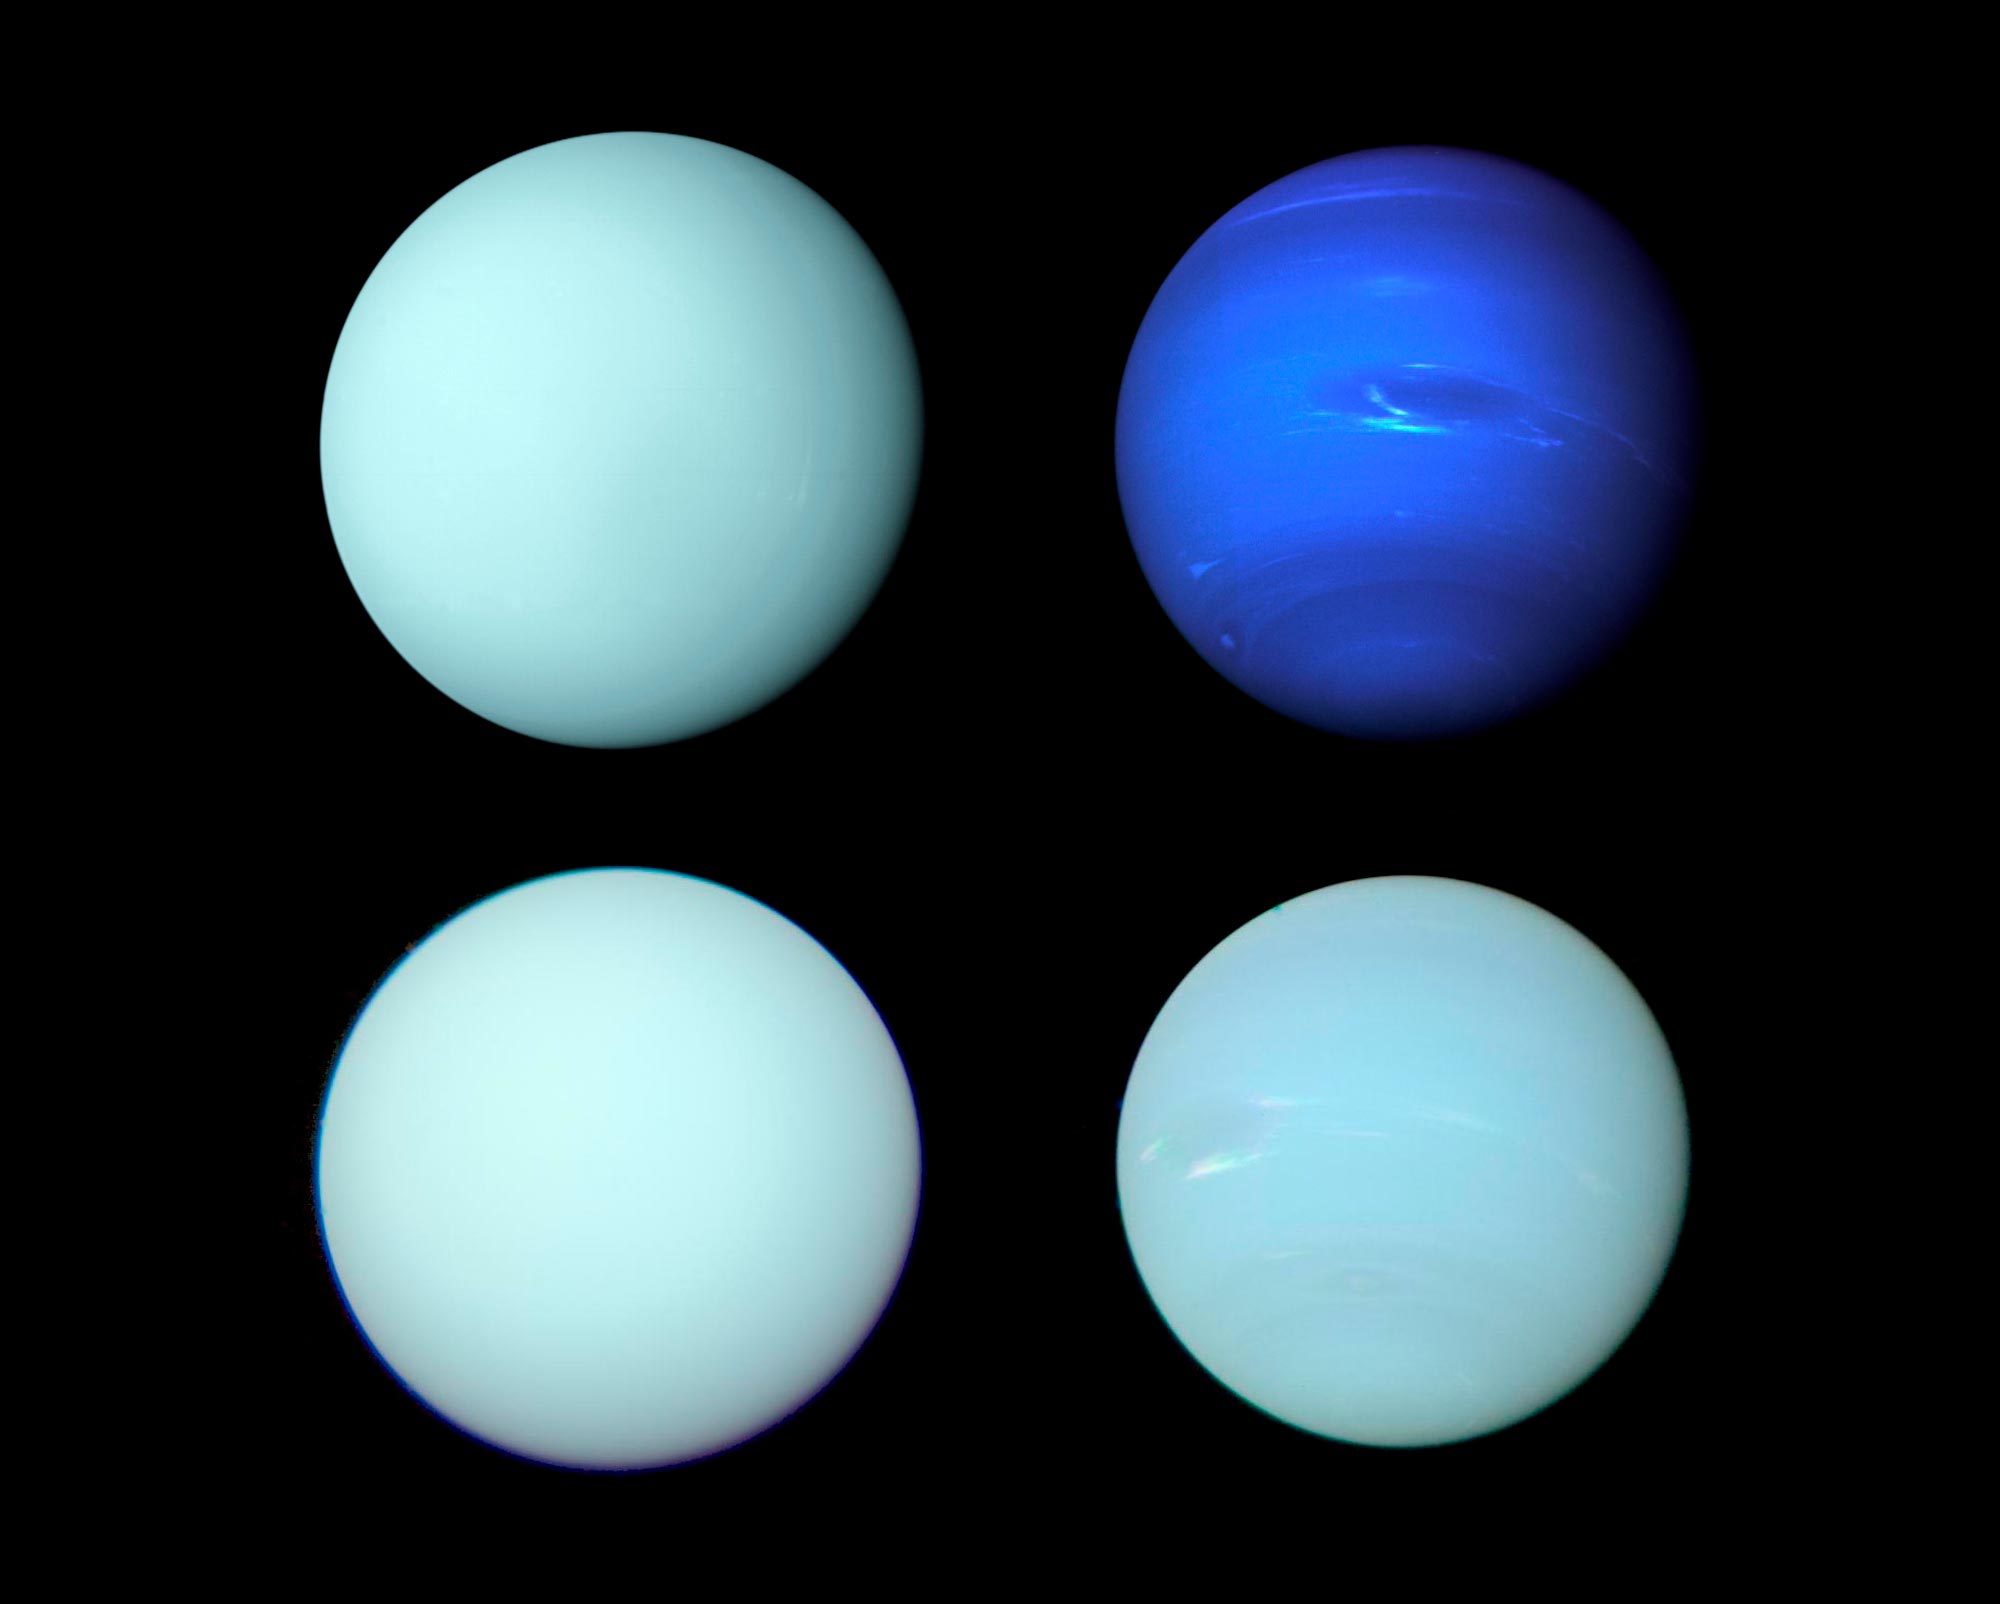 Nuove immagini rivelano come appaiono realmente Nettuno e Urano